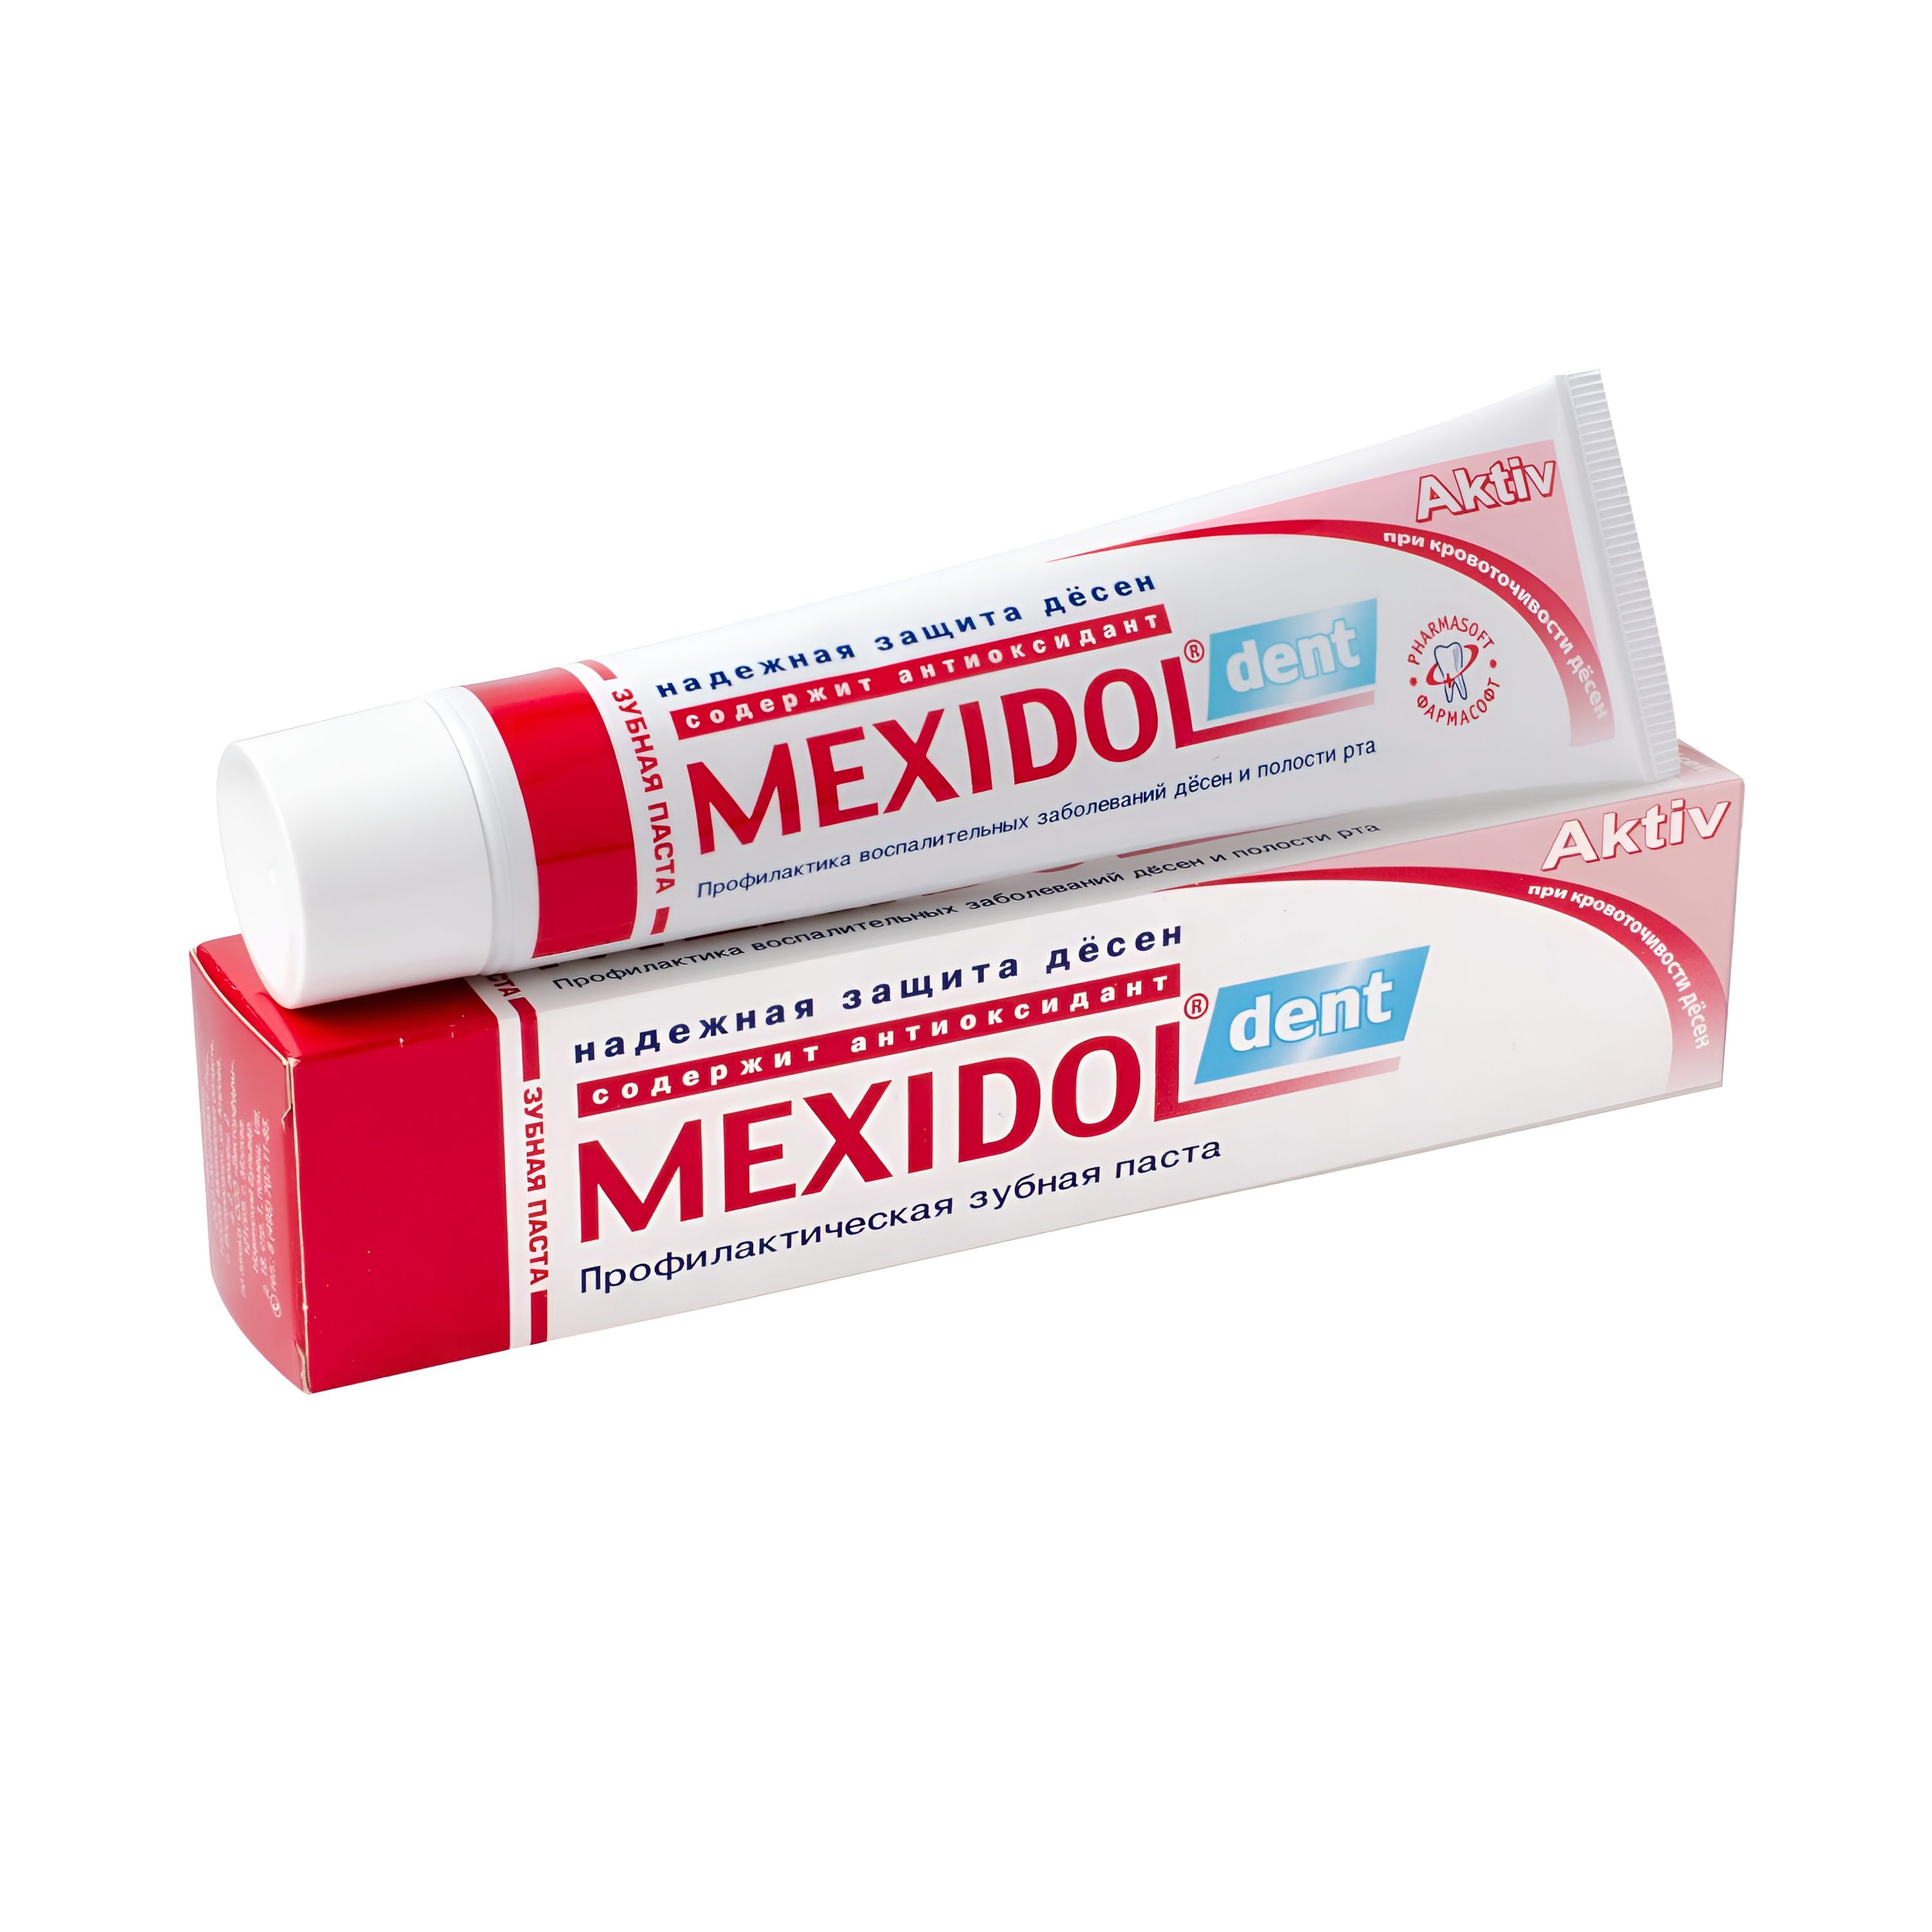 Мексидол Дент Актив, зубная паста, 65 г мексидол дент фито зубная паста 100 г